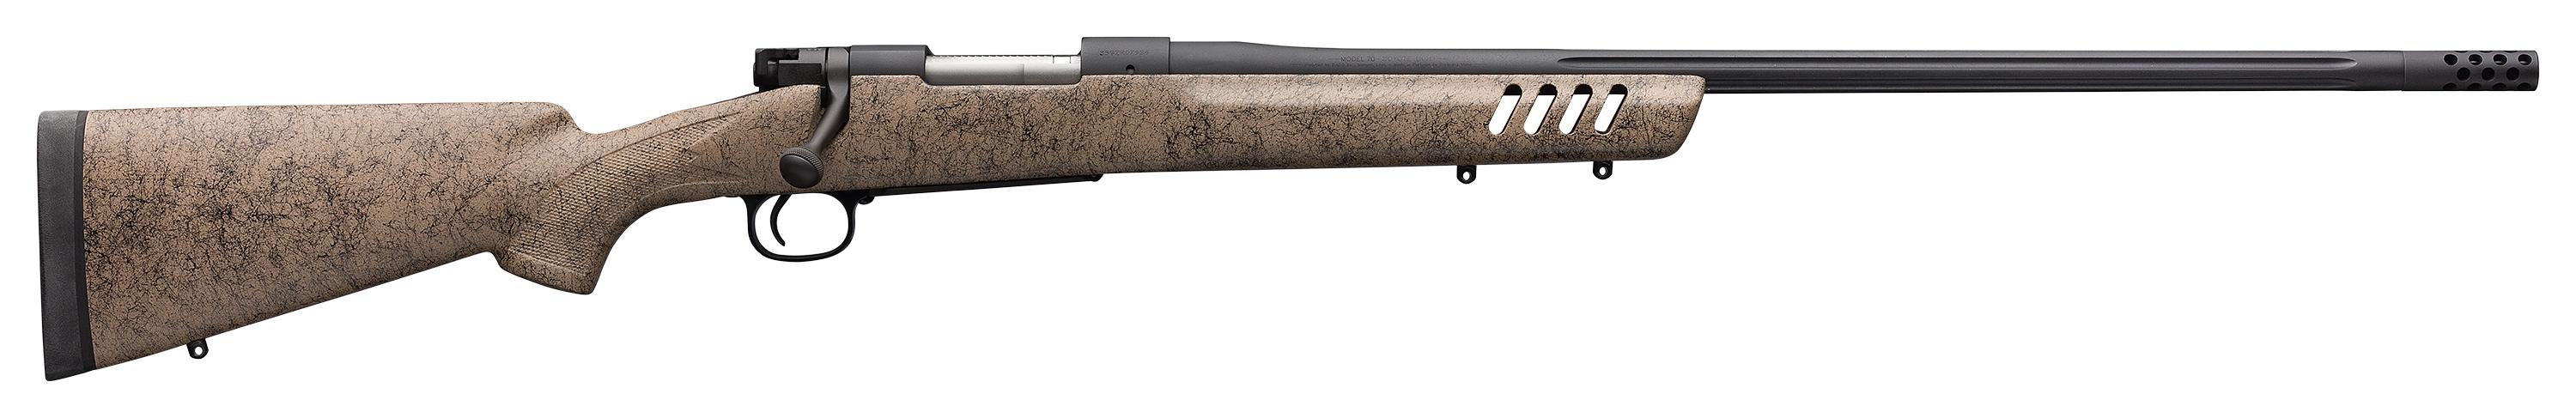 Winchester Model 70 Long Range MB - 535243212-01.jpg